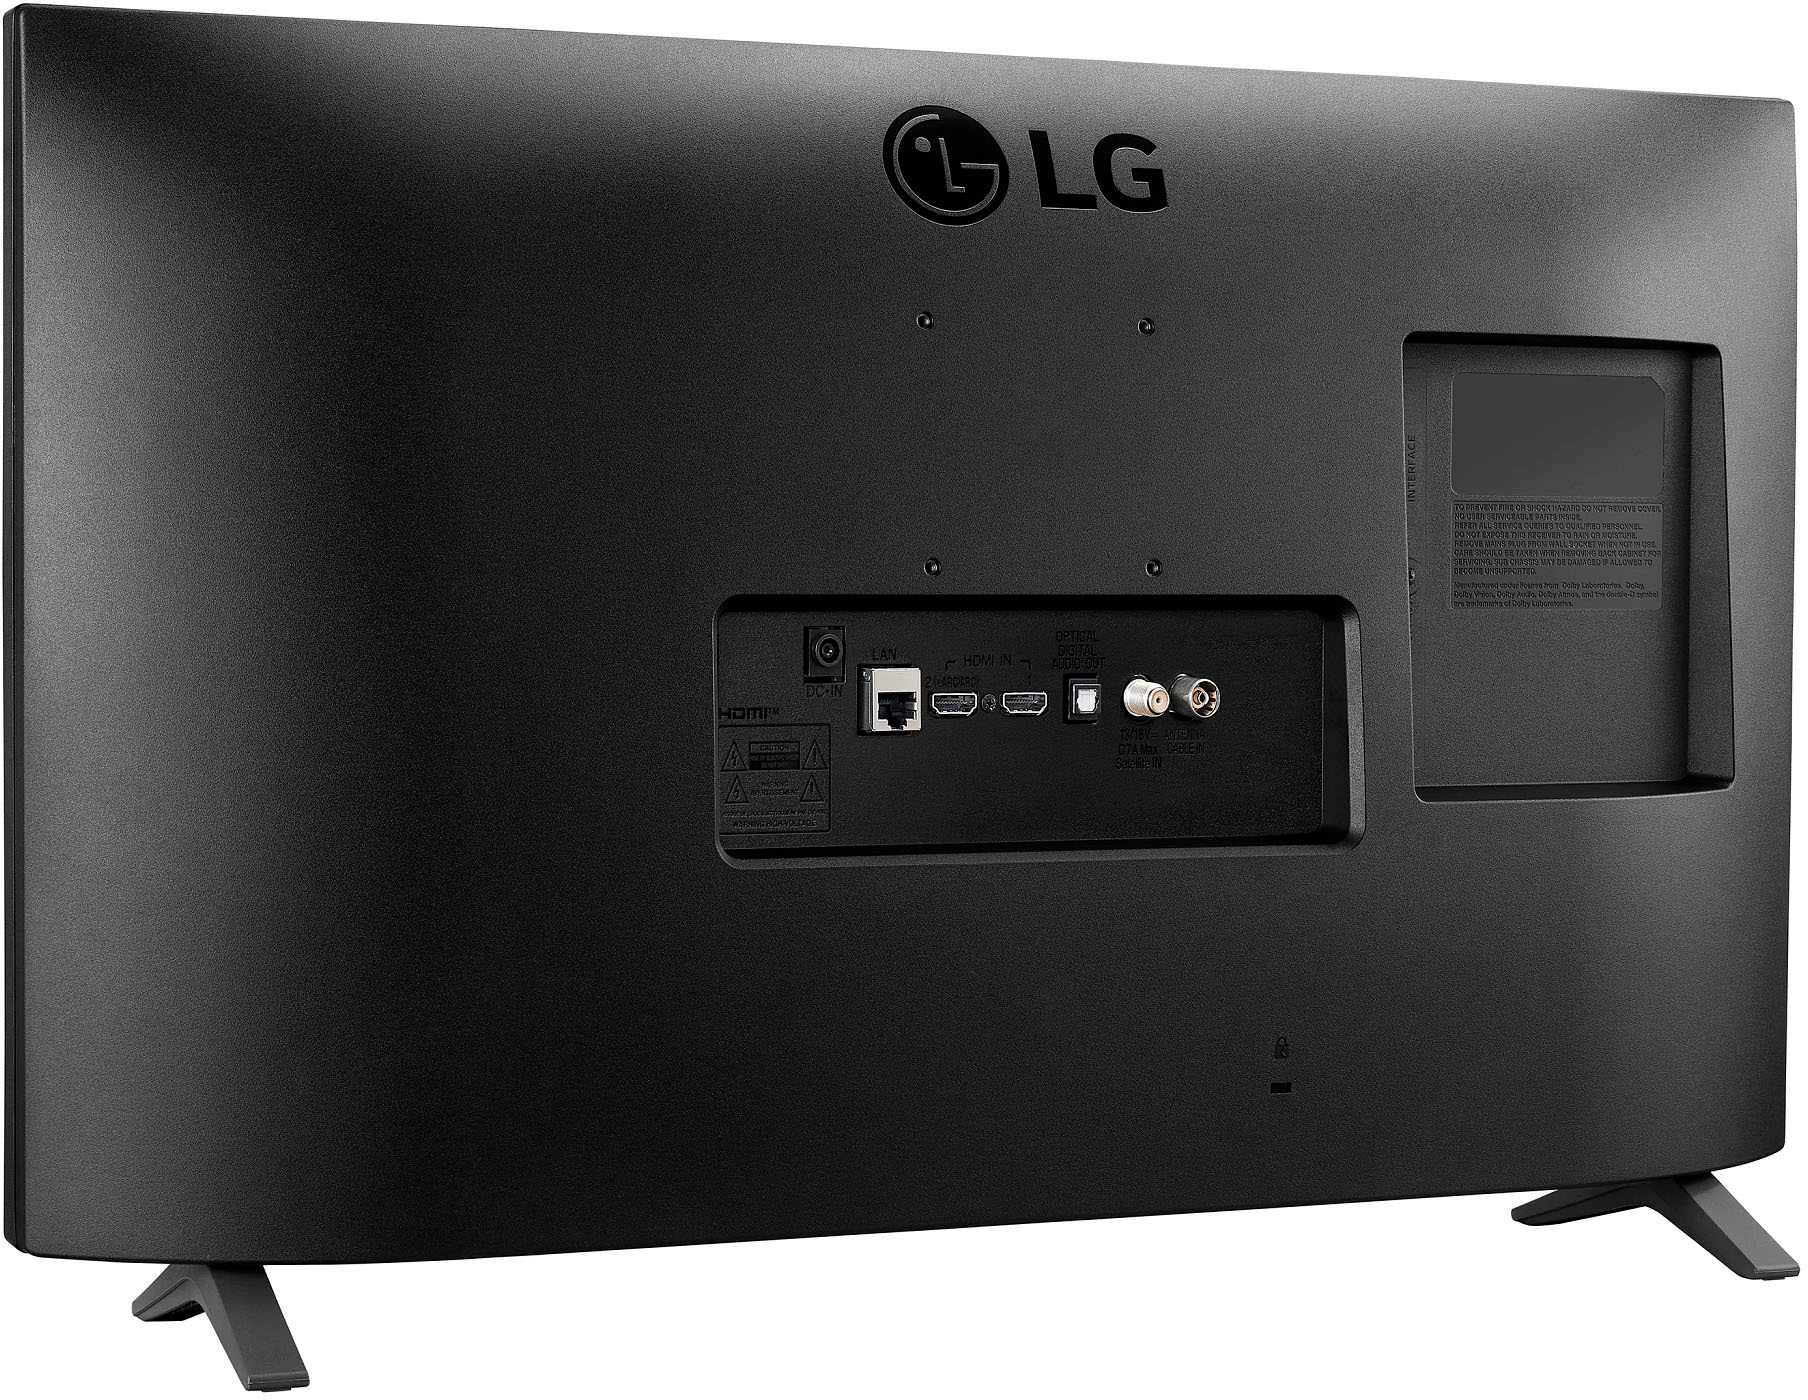 LG Monitor 27TQ615S-PZ 27  IPS FHD 1920 x 1080 16:9 14 ms 250 cd/m Bl